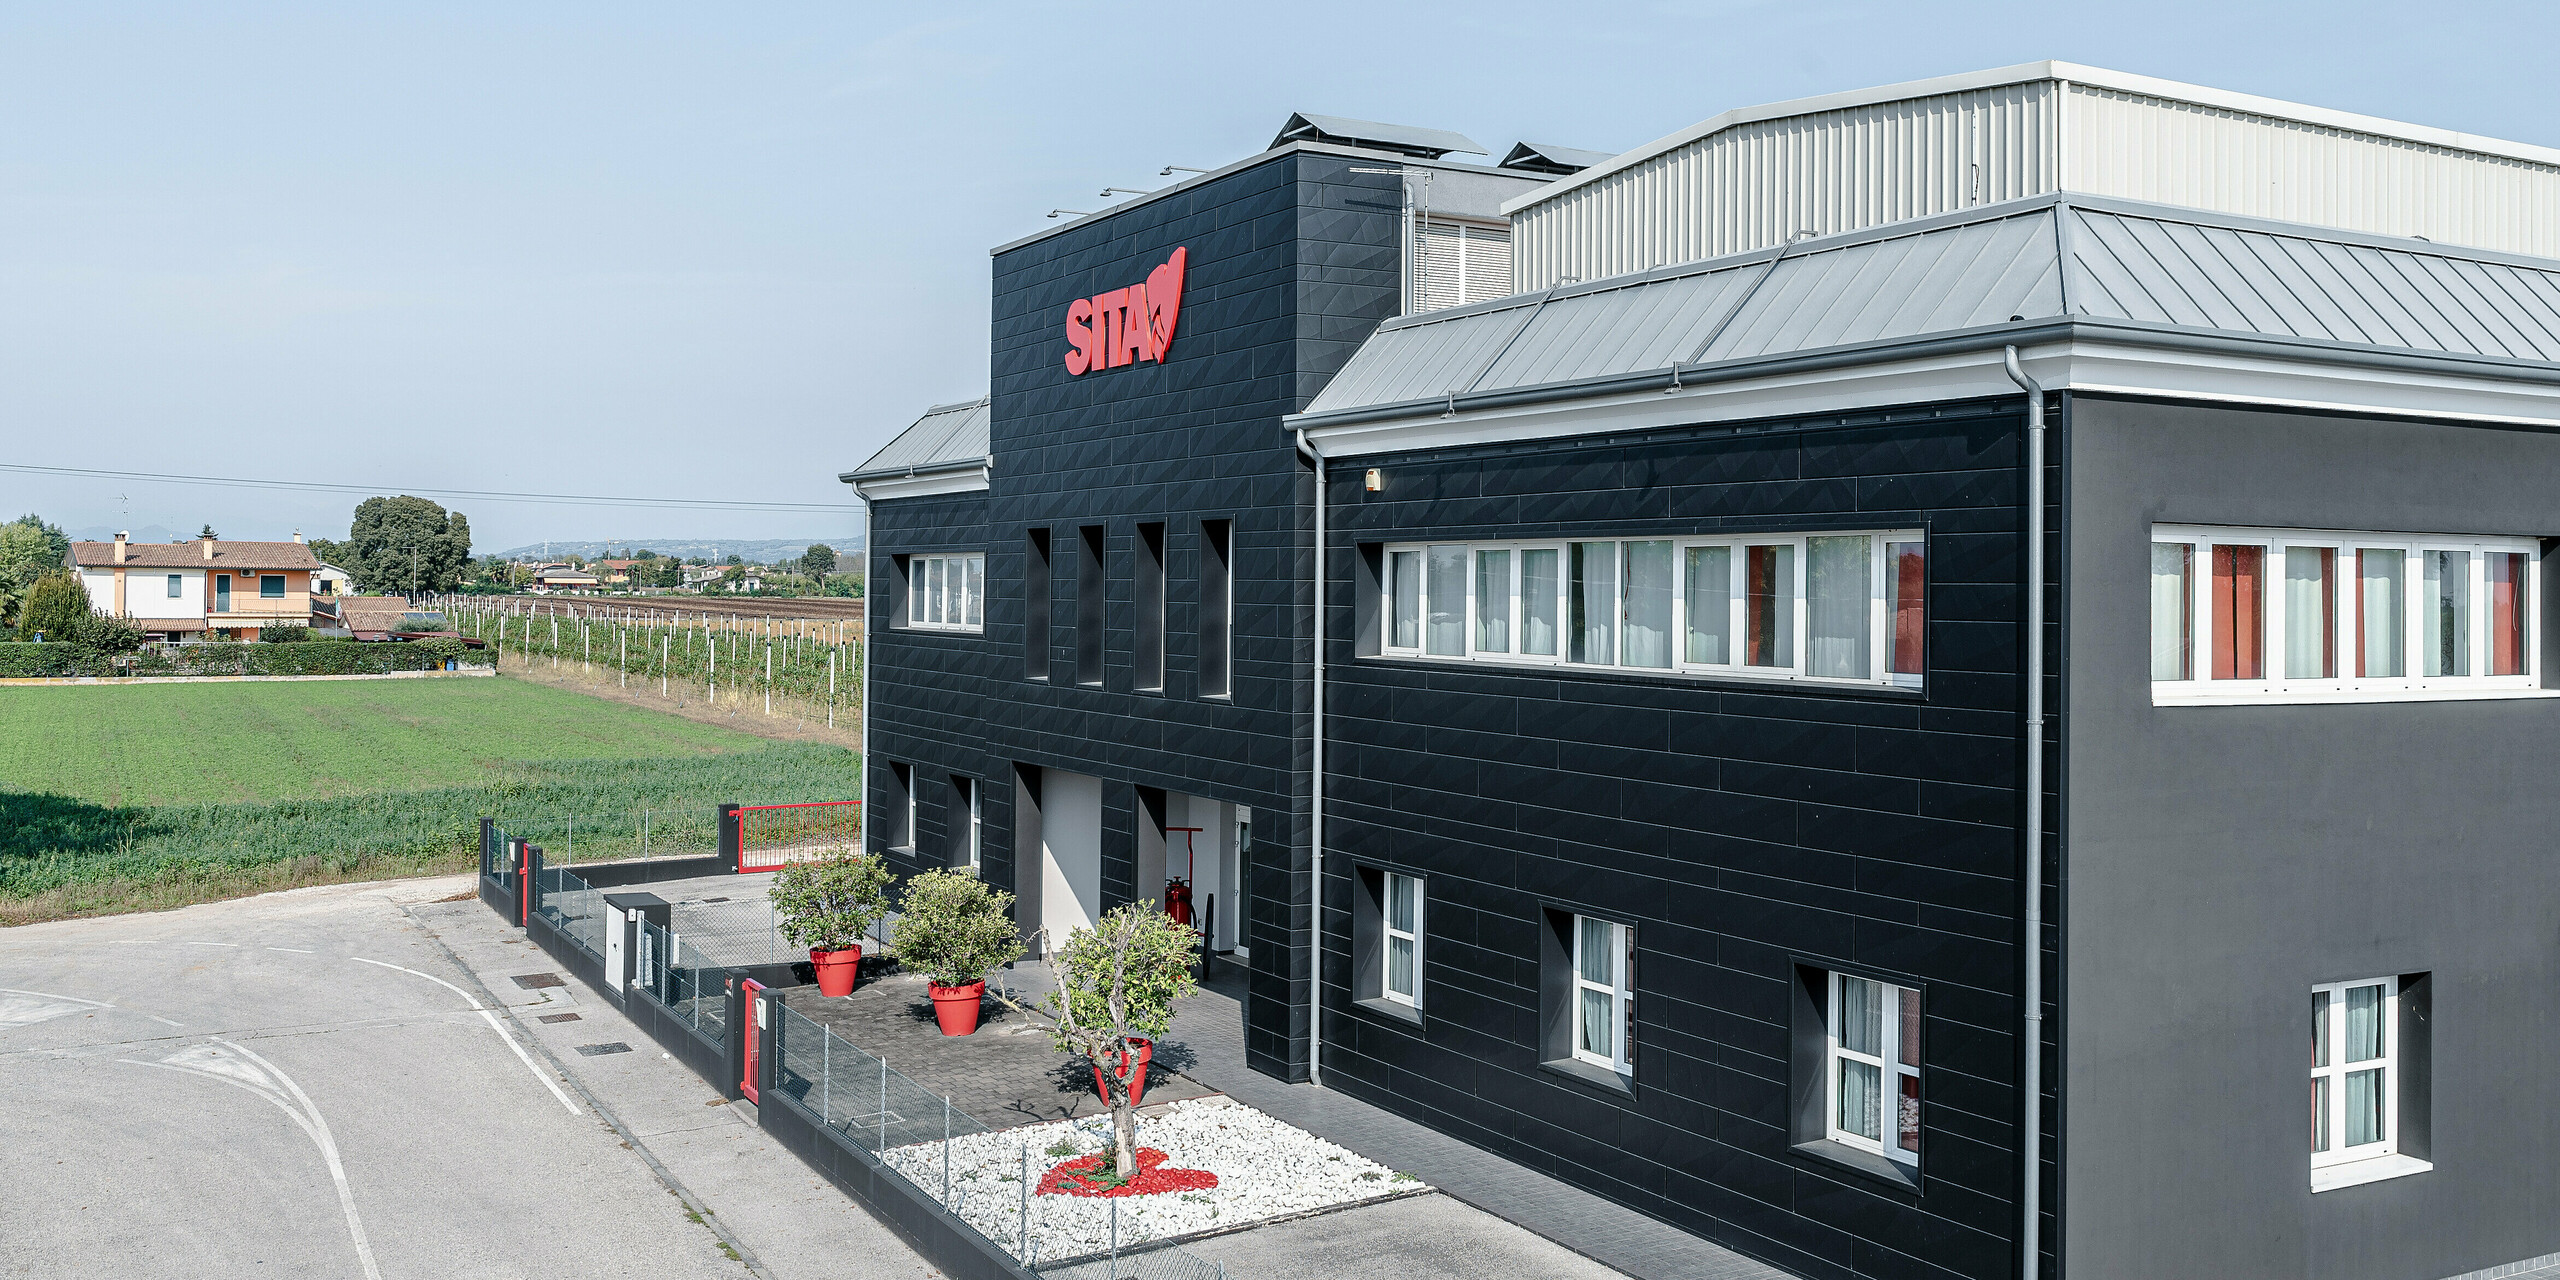 Budova spoločnosti SITA v talianskom Porcellengu uprostred idylickej krajiny, ktorú charakterizuje tmavá fasáda PREFA Siding.X vo farbe P.10 čierna. Fasáda je dokonalým príkladom úspešnej kombinácie modernej konštrukcie a zakomponovania do krajiny. Červené logo na budove nápadne vyniká na pozadí tmavých hliníkových panelov, ktoré sú nielen estetické, ale vďaka svojej odolnosti a udržateľnosti aj ideálne na priemyselné použitie. V pozadí vinič a polia dopĺňajú prírodnú atmosféru a zdôrazňujú miestne korene spoločnosti.